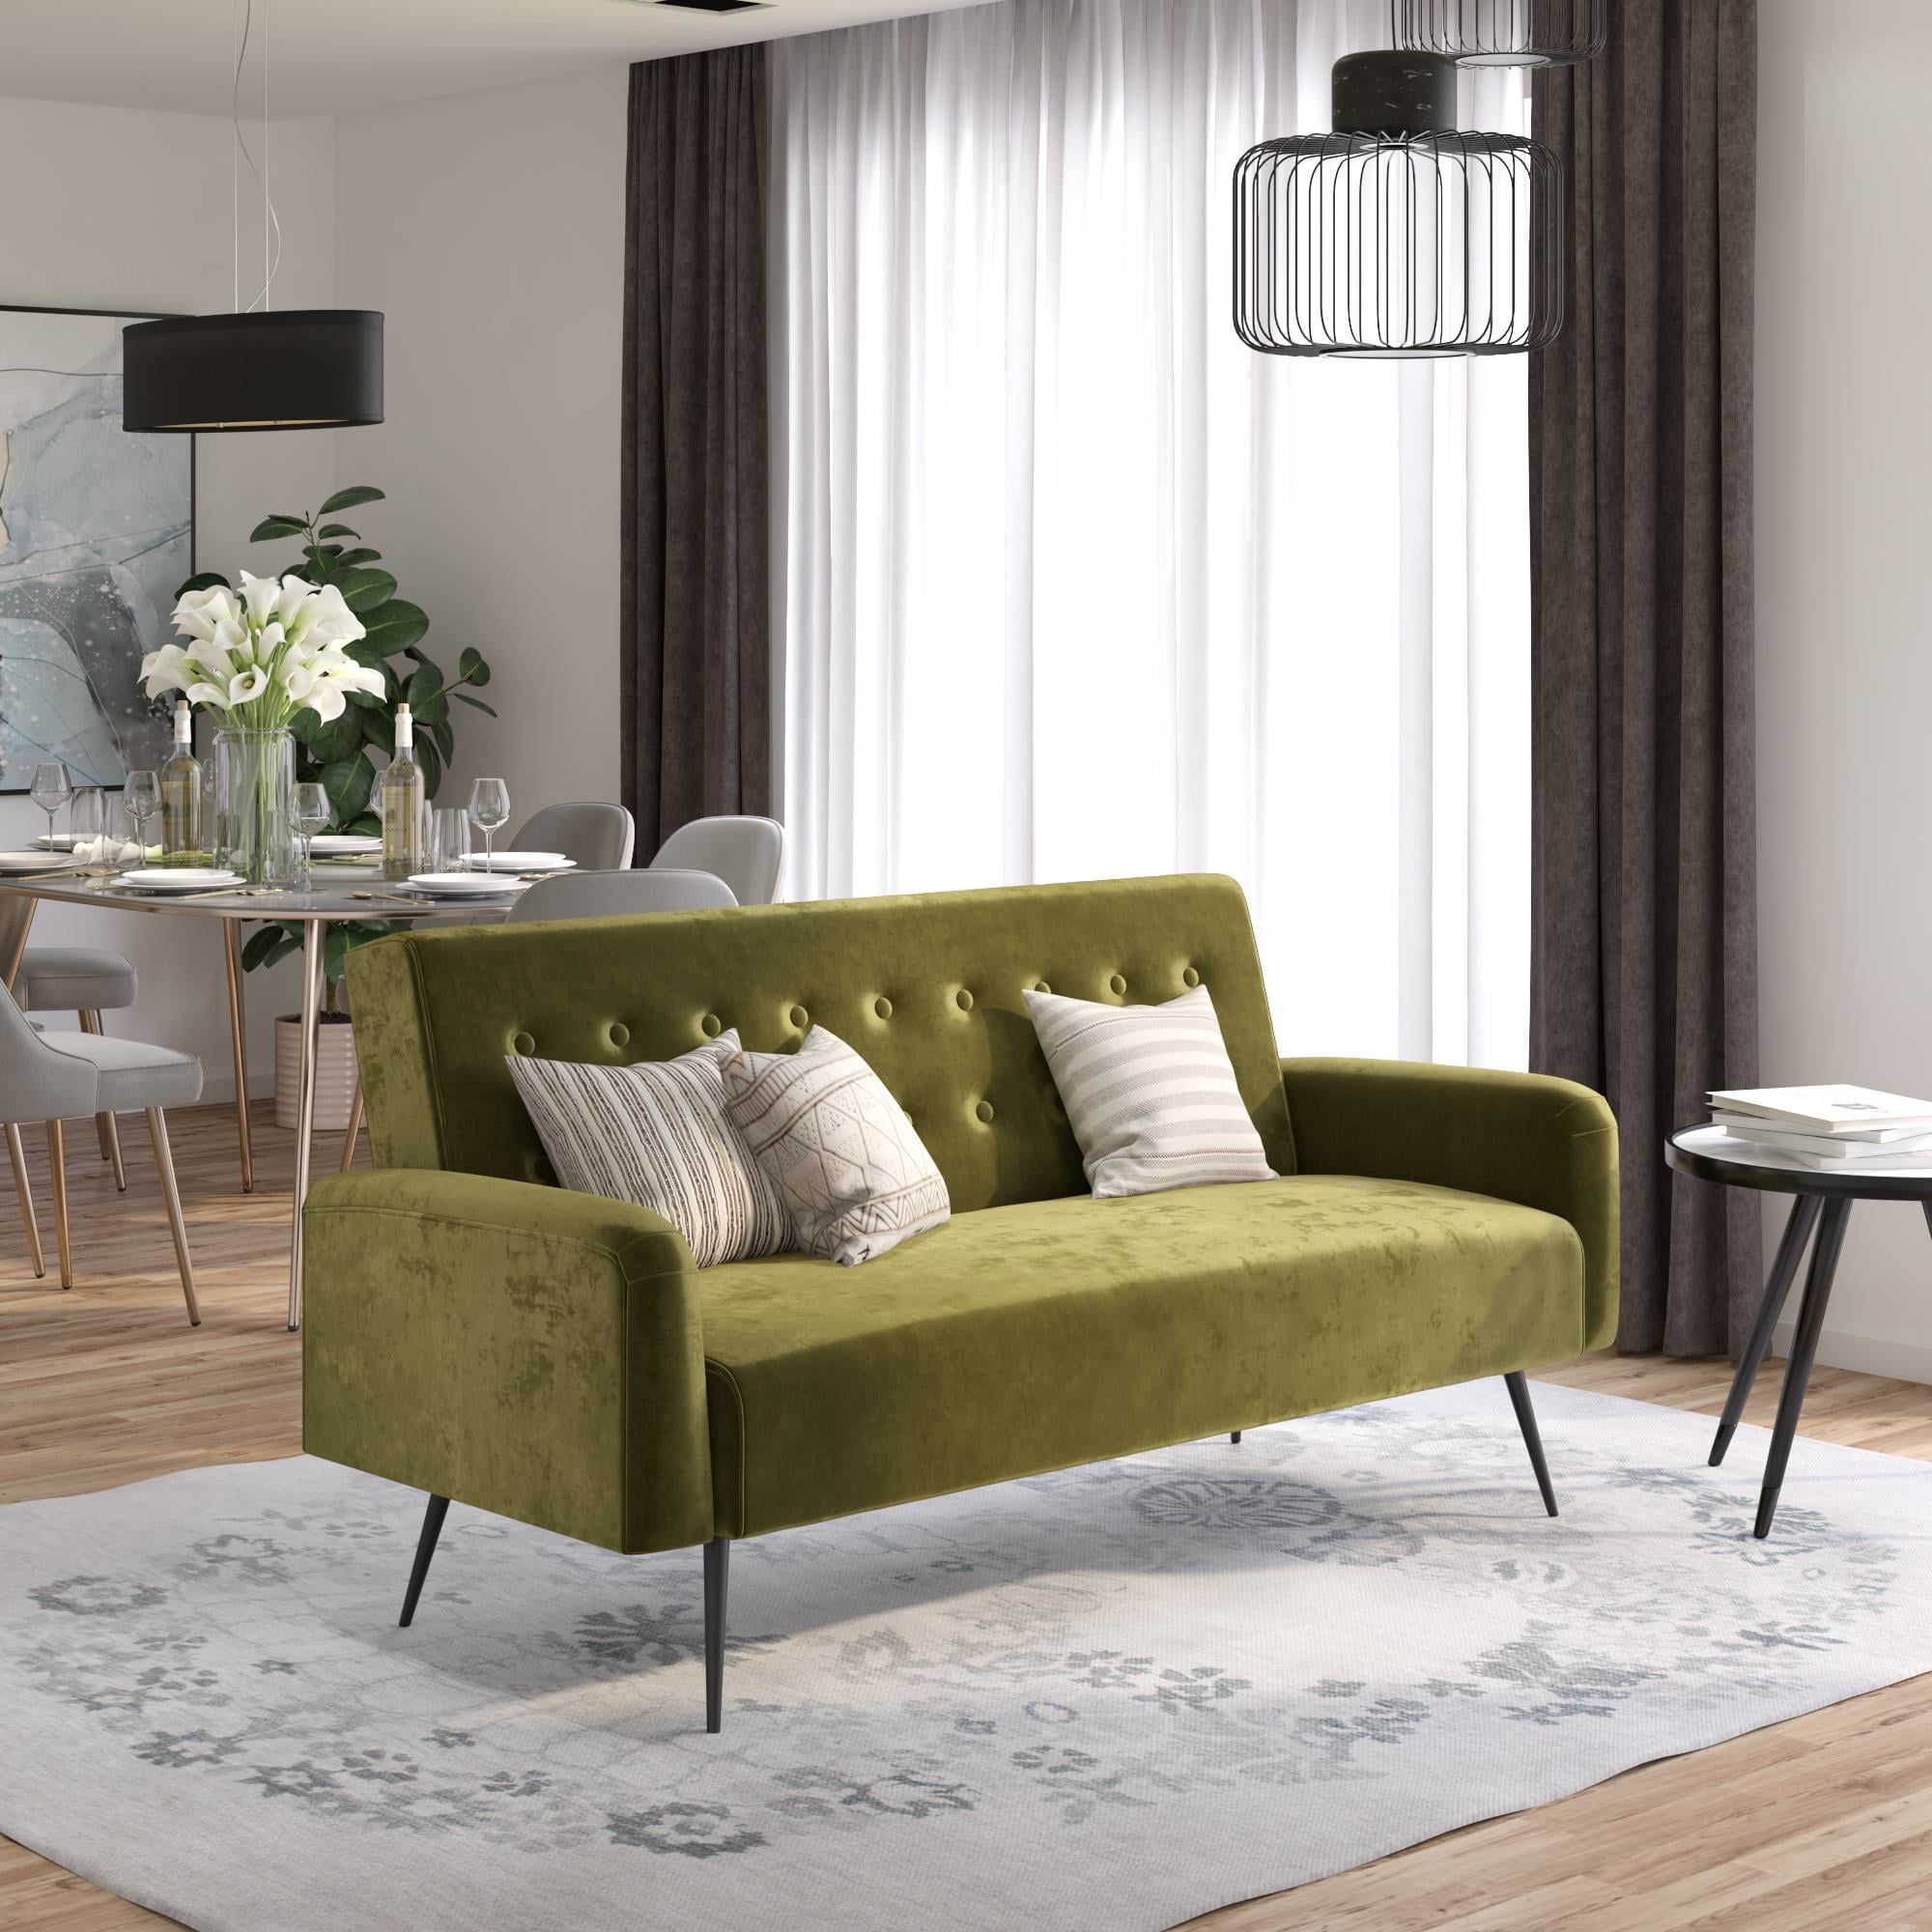 Buy Znovogratz Stevie Futon, Convertible Sofa Bed Couch, Green Throughout 66" Convertible Velvet Sofa Beds (Photo 15 of 15)